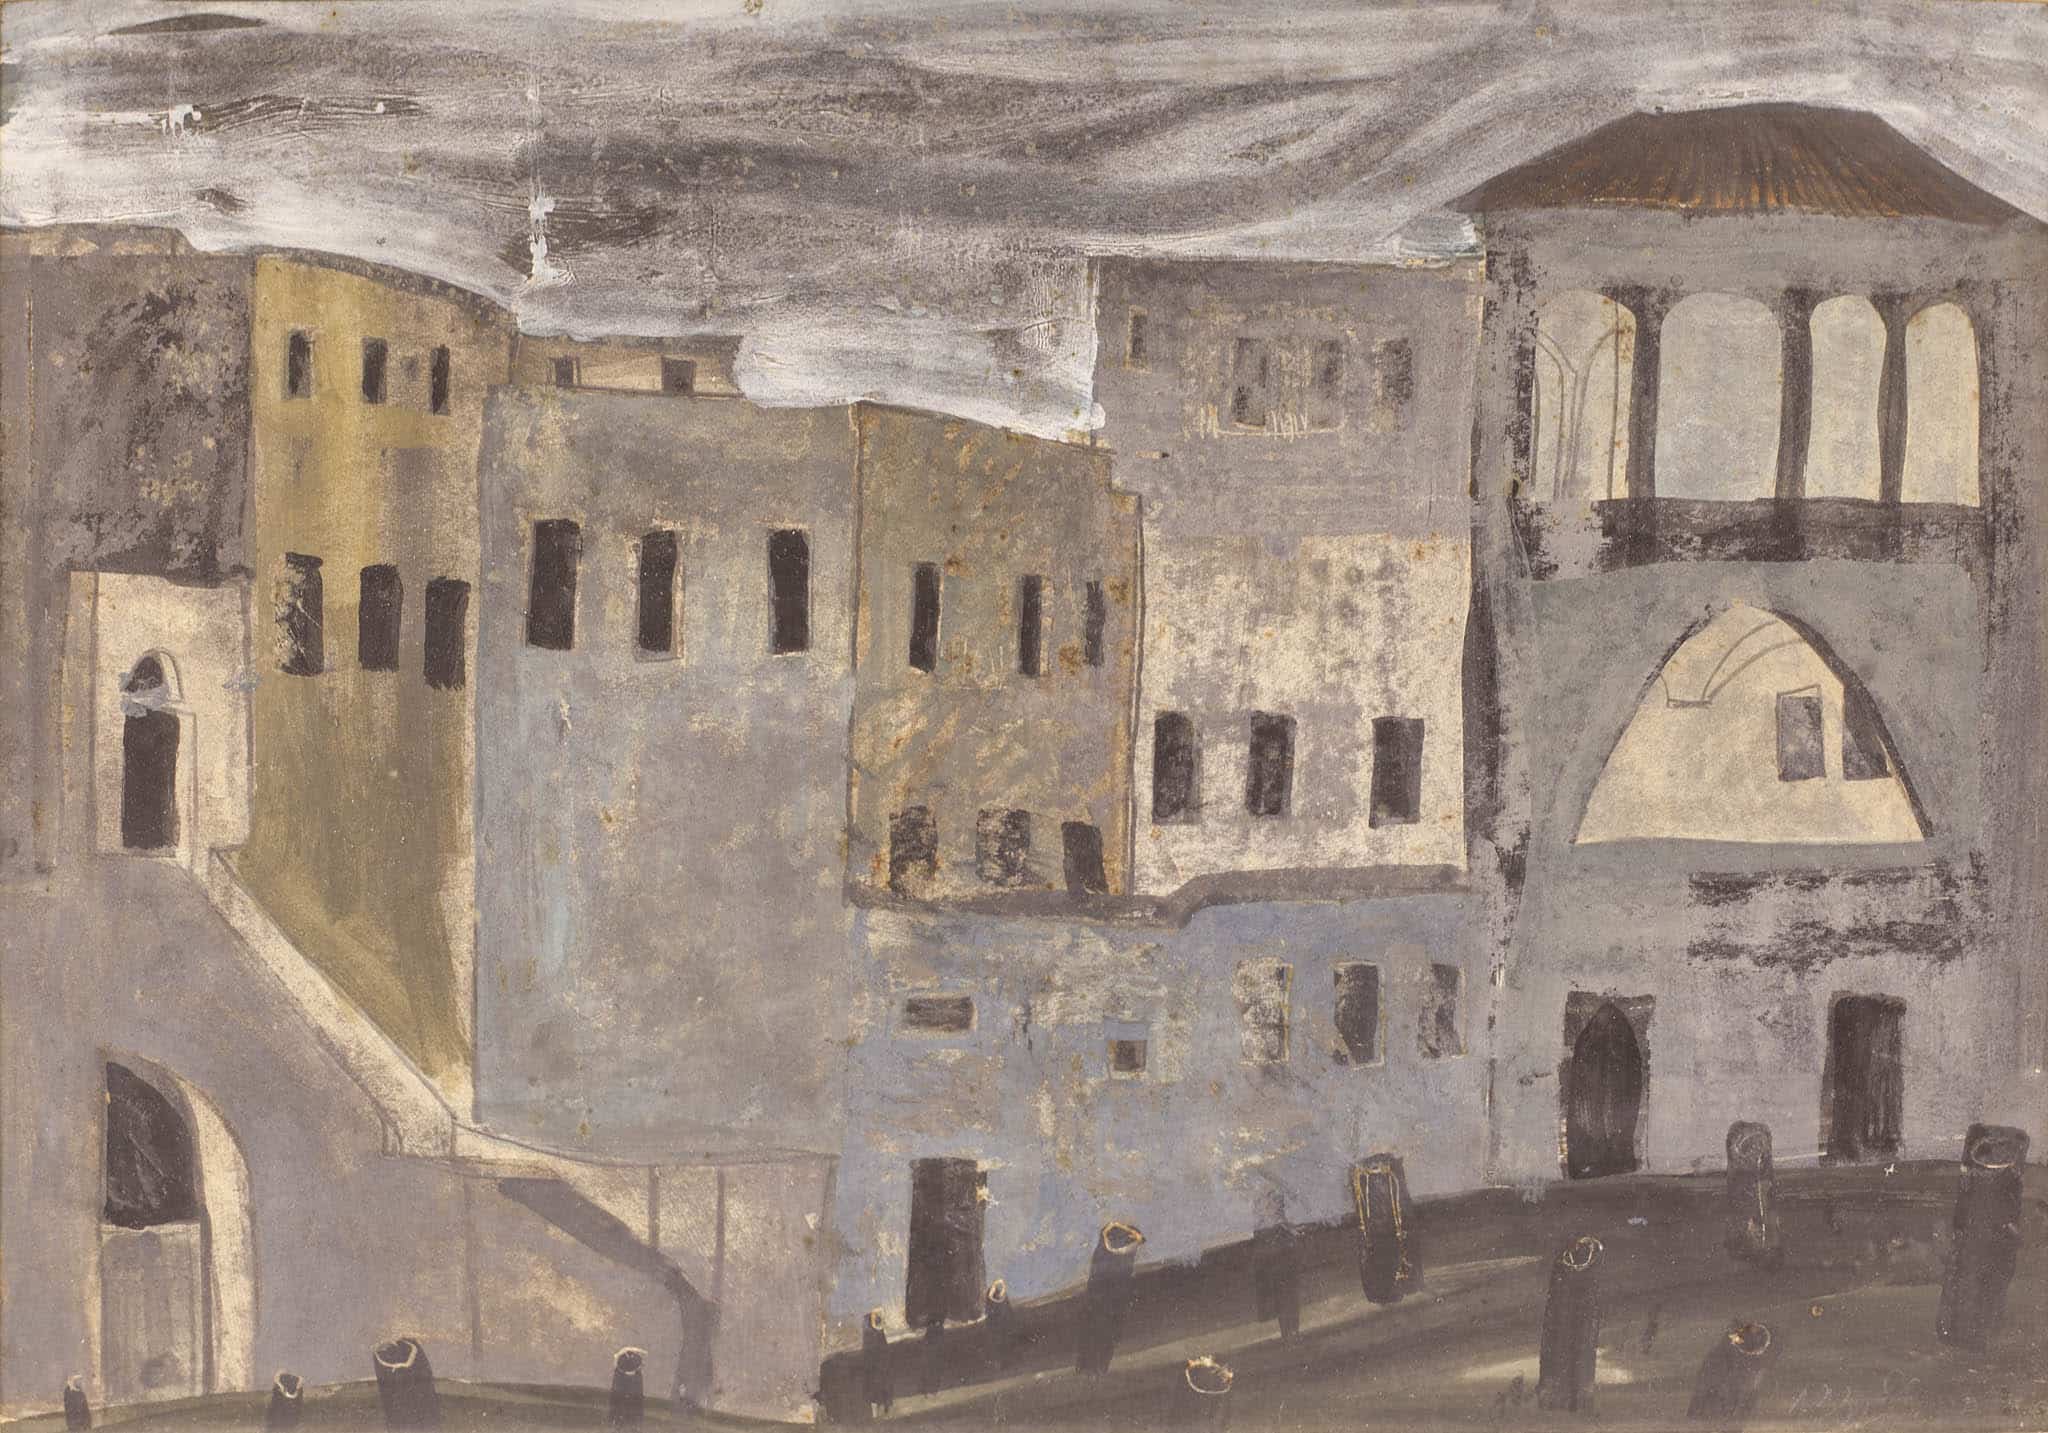 אברהם אופק, "בתים", 1960, גואש ועיפרון על נייר, 35x50 ס"מ